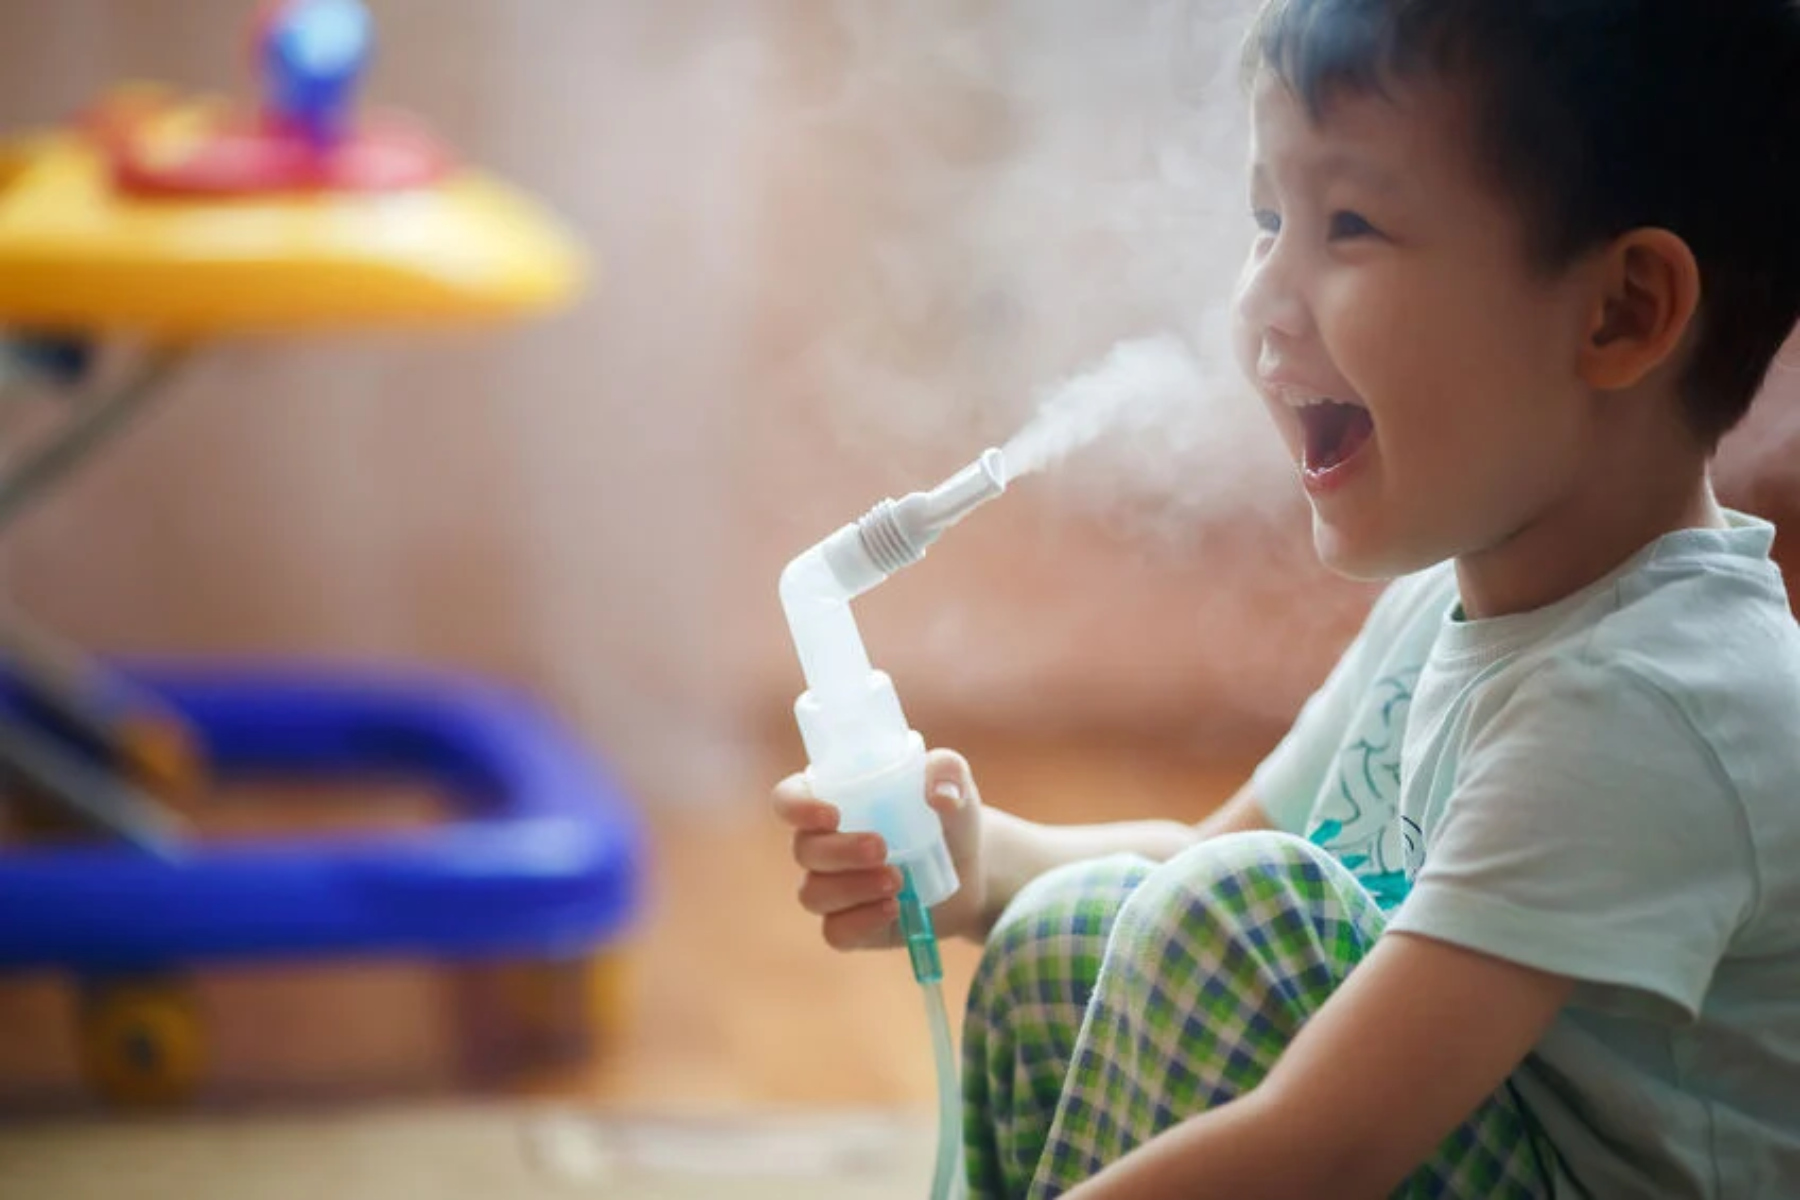 Άσθμα: Τι μέτρα πρέπει να λάβετε για να διαχειριστείτε το άσθμα του παιδιού σας;